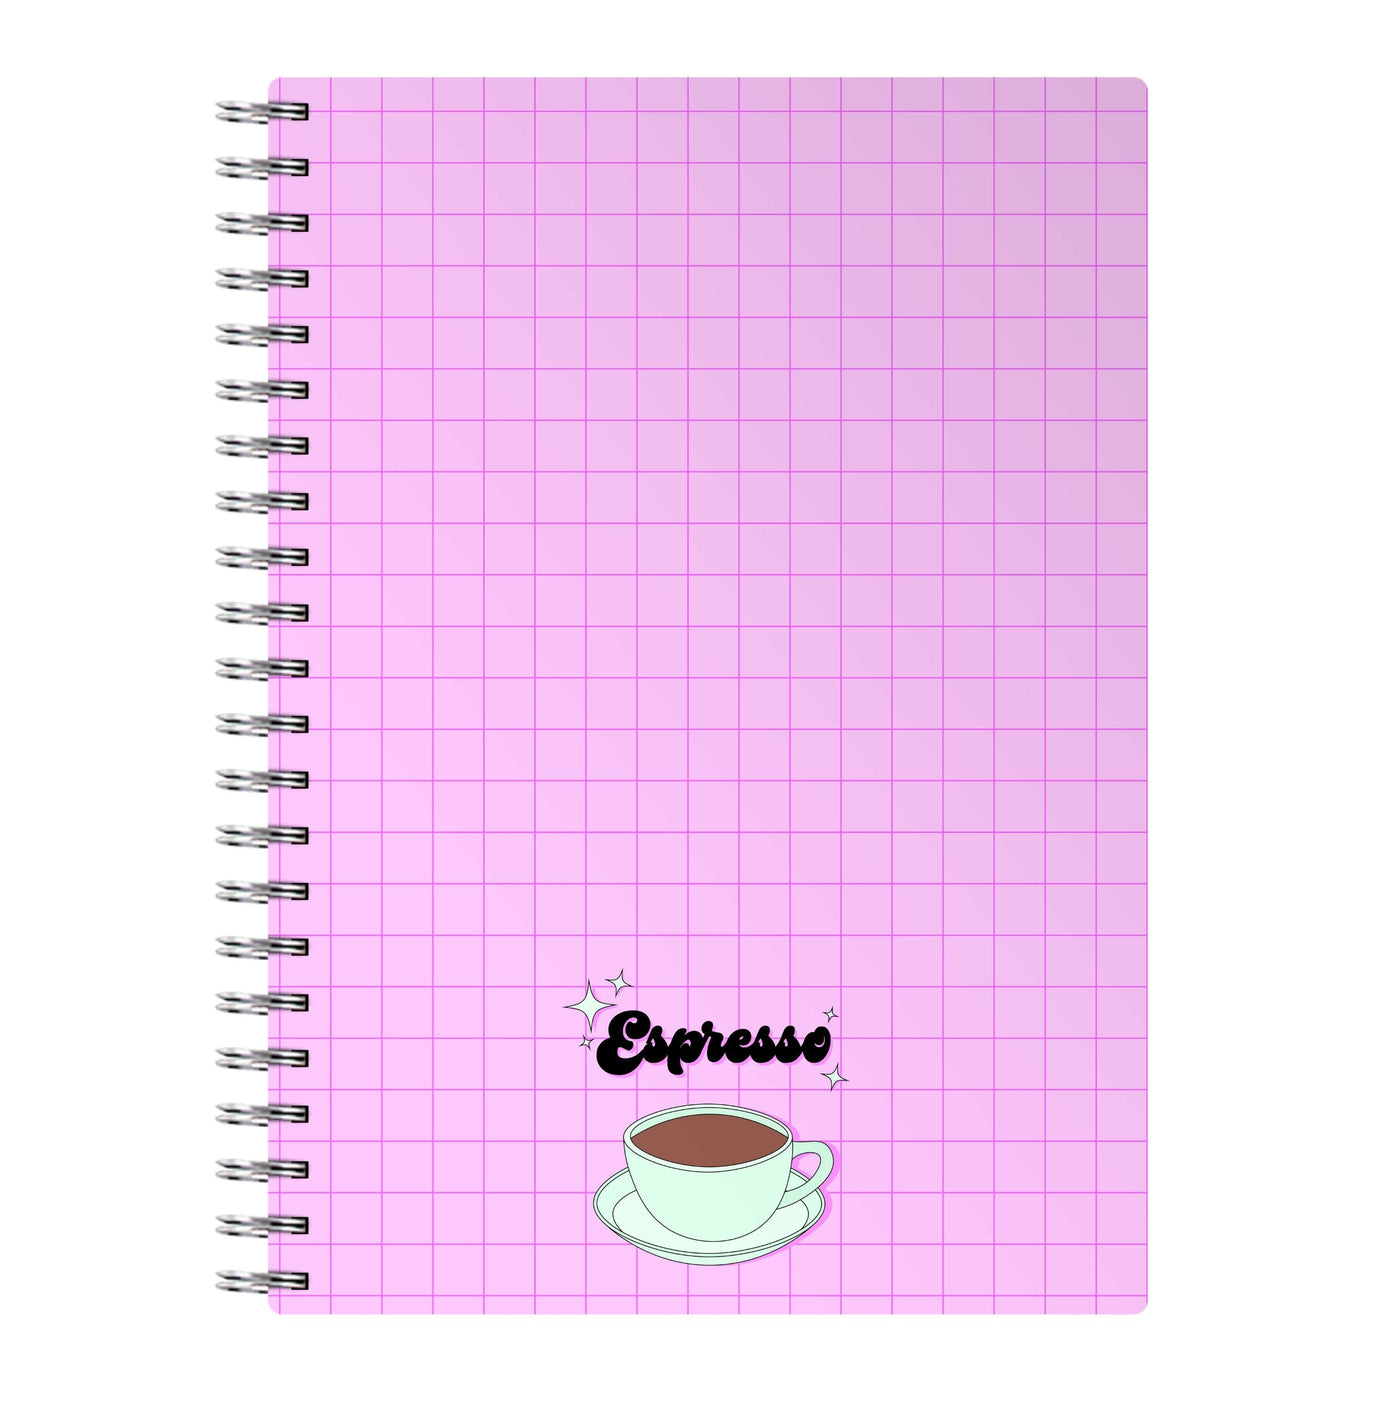 Espresso - Sabrina Carpenter Notebook